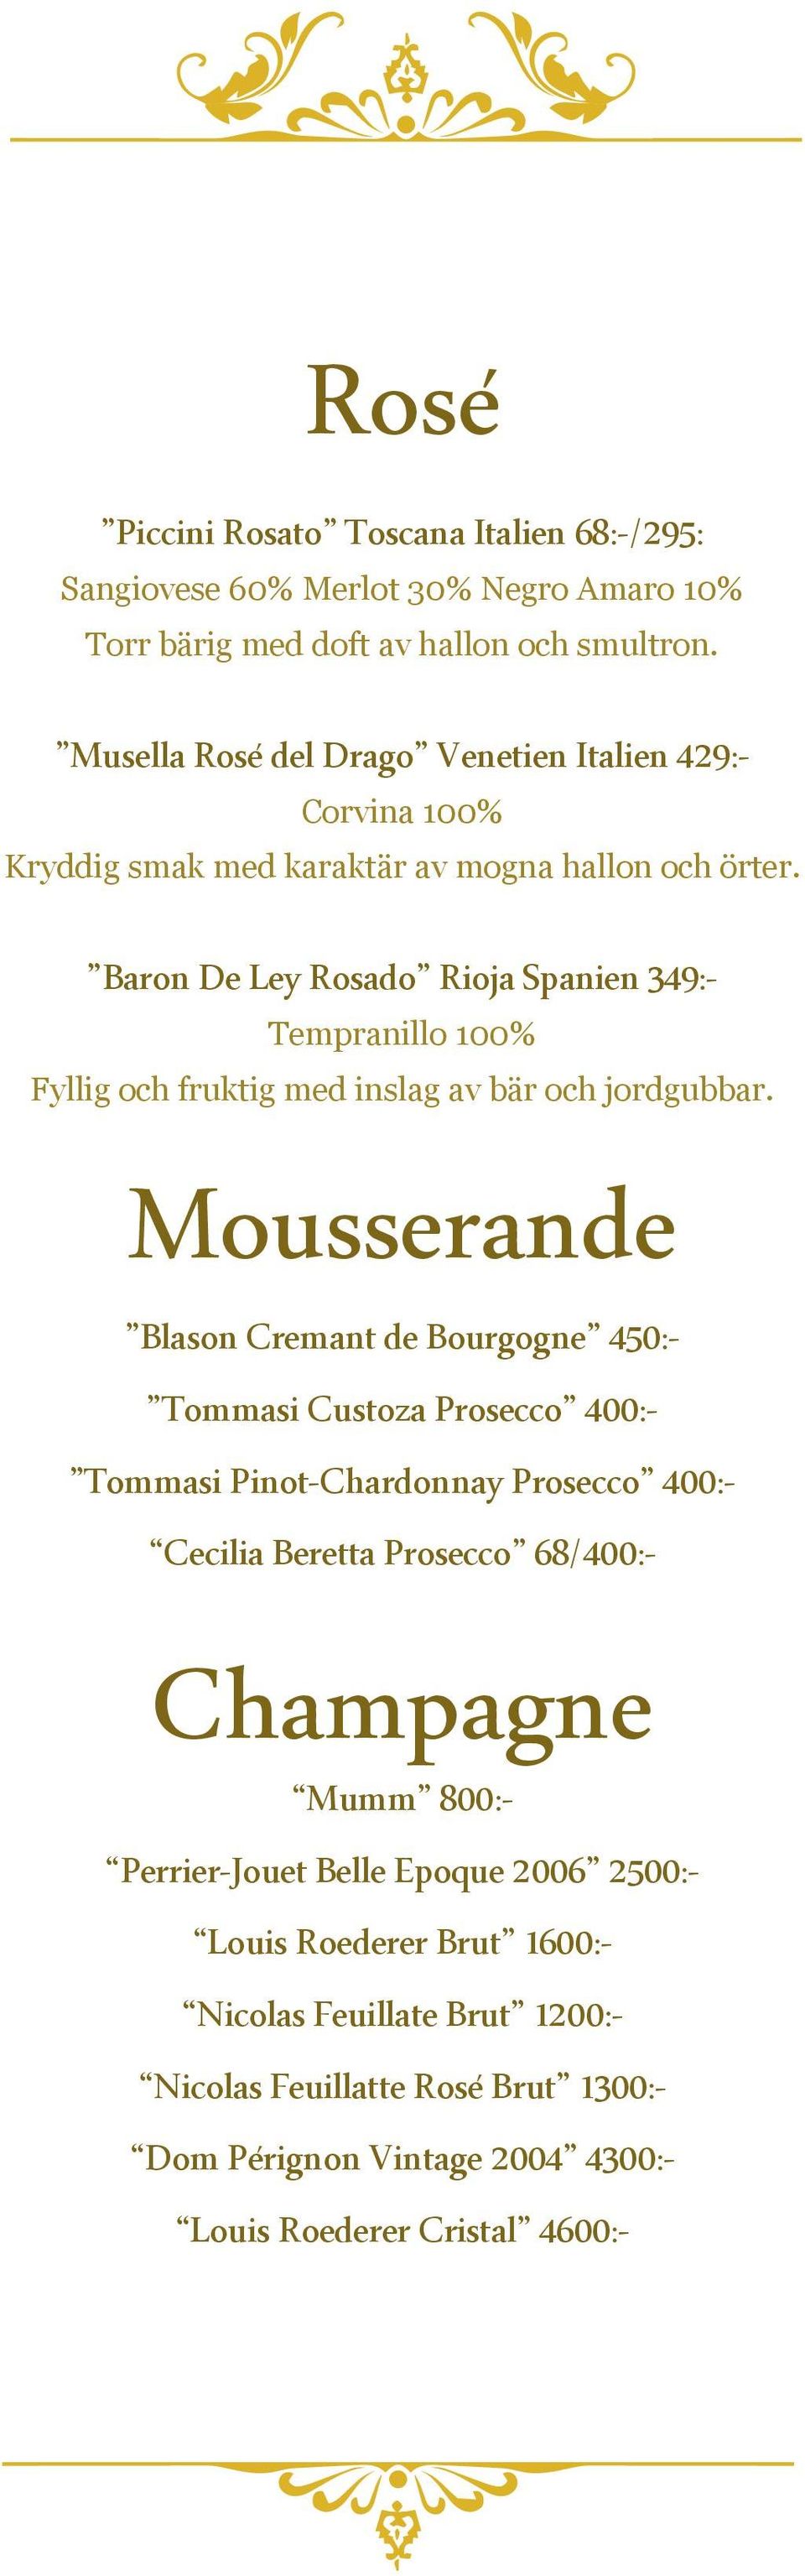 Baron De Ley Rosado Rioja Spanien 349:- Tempranillo 100% Fyllig och fruktig med inslag av bär och jordgubbar.